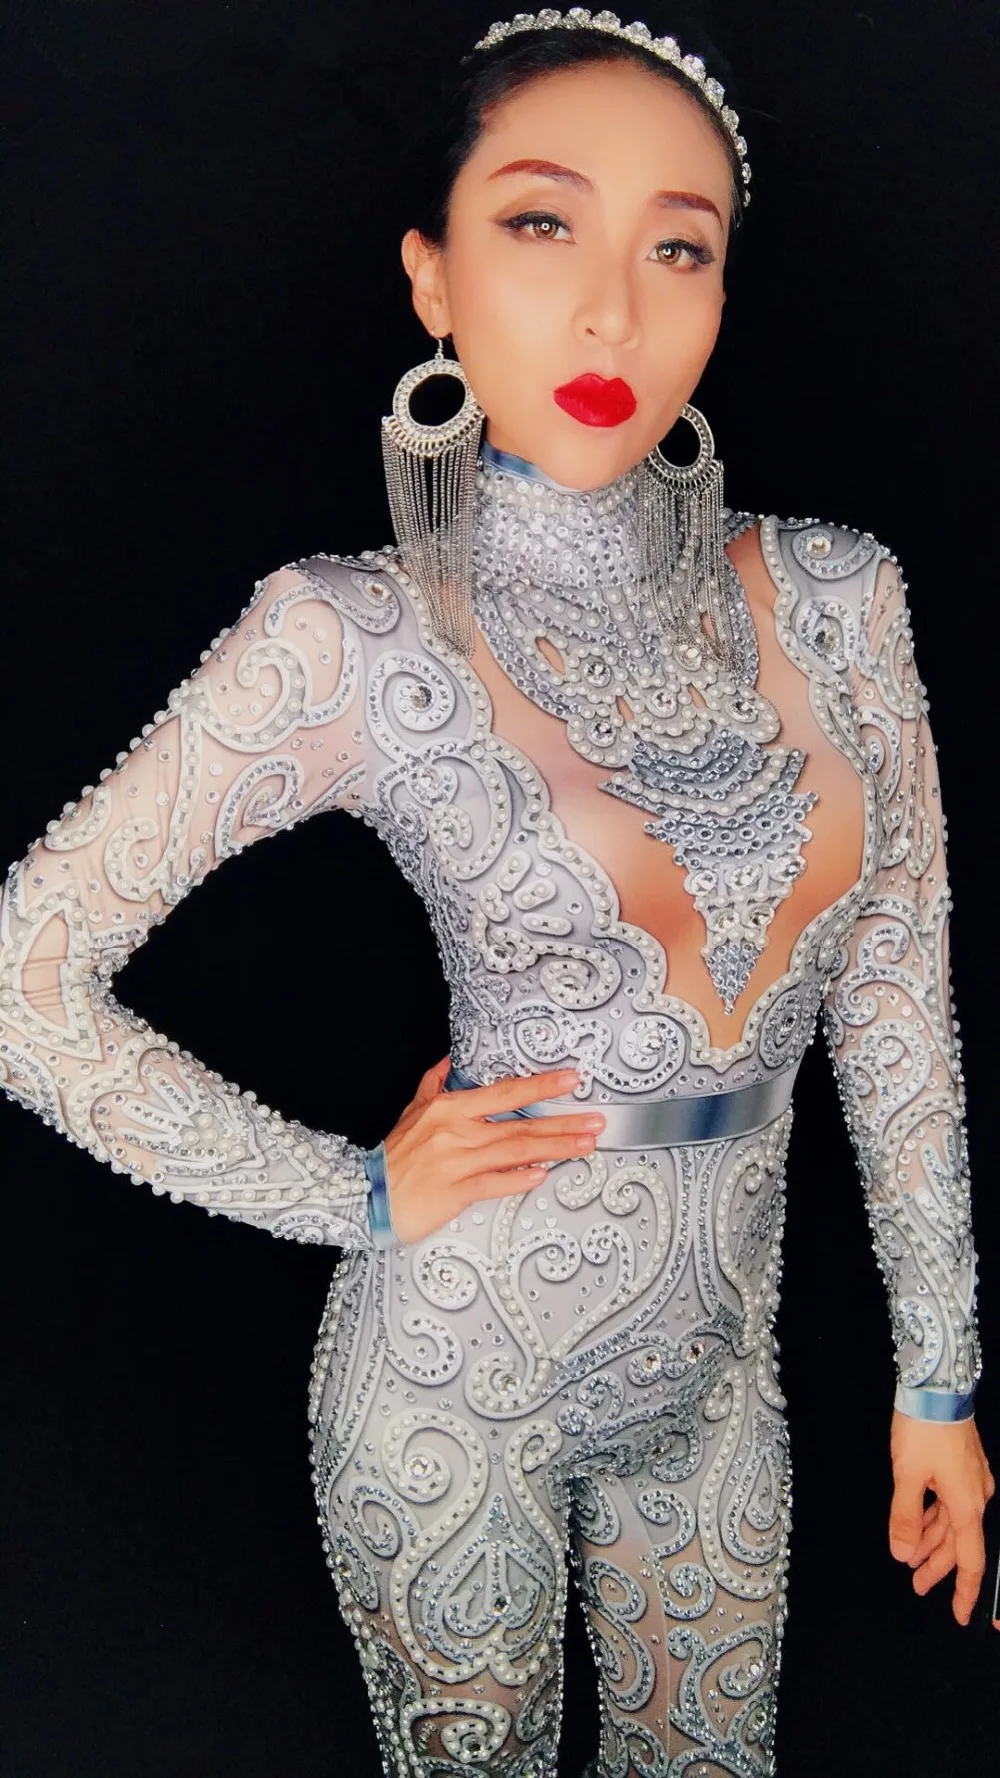 Блестящие стеклянные камни жемчуг комбинезон сексуальный обтягивающий серебристо-серый Стразы боди леди DJ бар певица Подиум вечерние сценический костюм